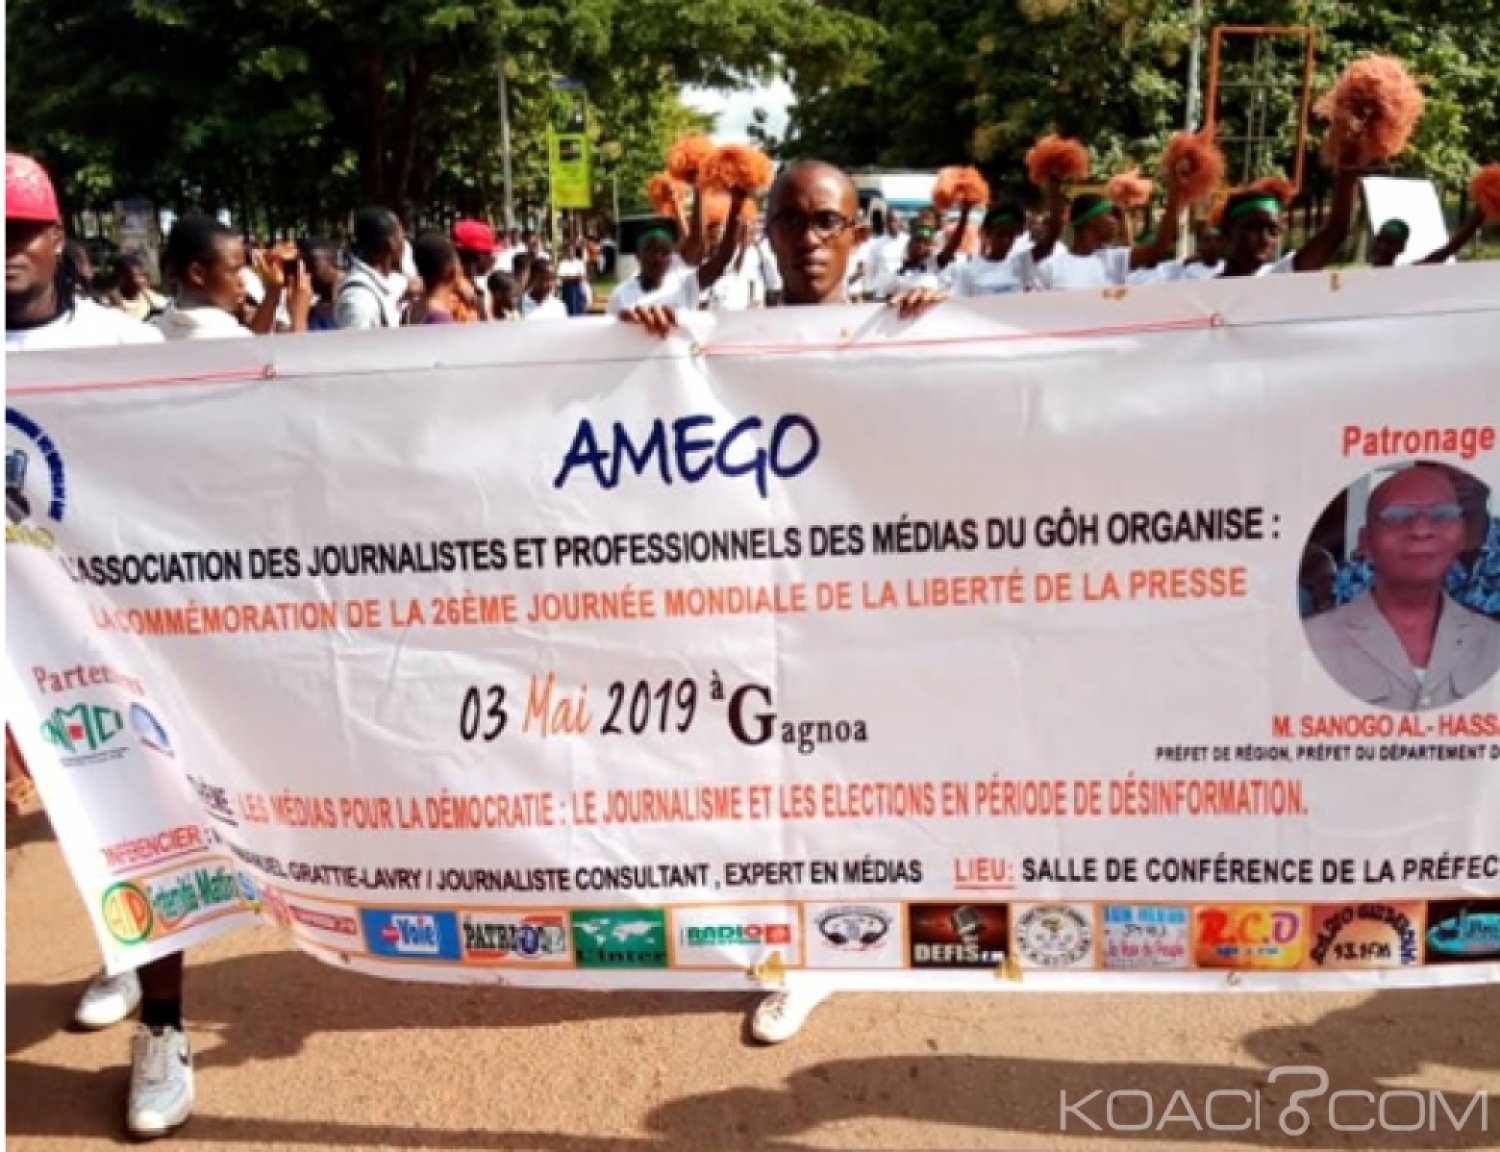 Côte d'Ivoire : Journée mondiale de la liberté de la presse  Franck Ettien « il faut encourager la décentralisation de certaines activités de l'union »